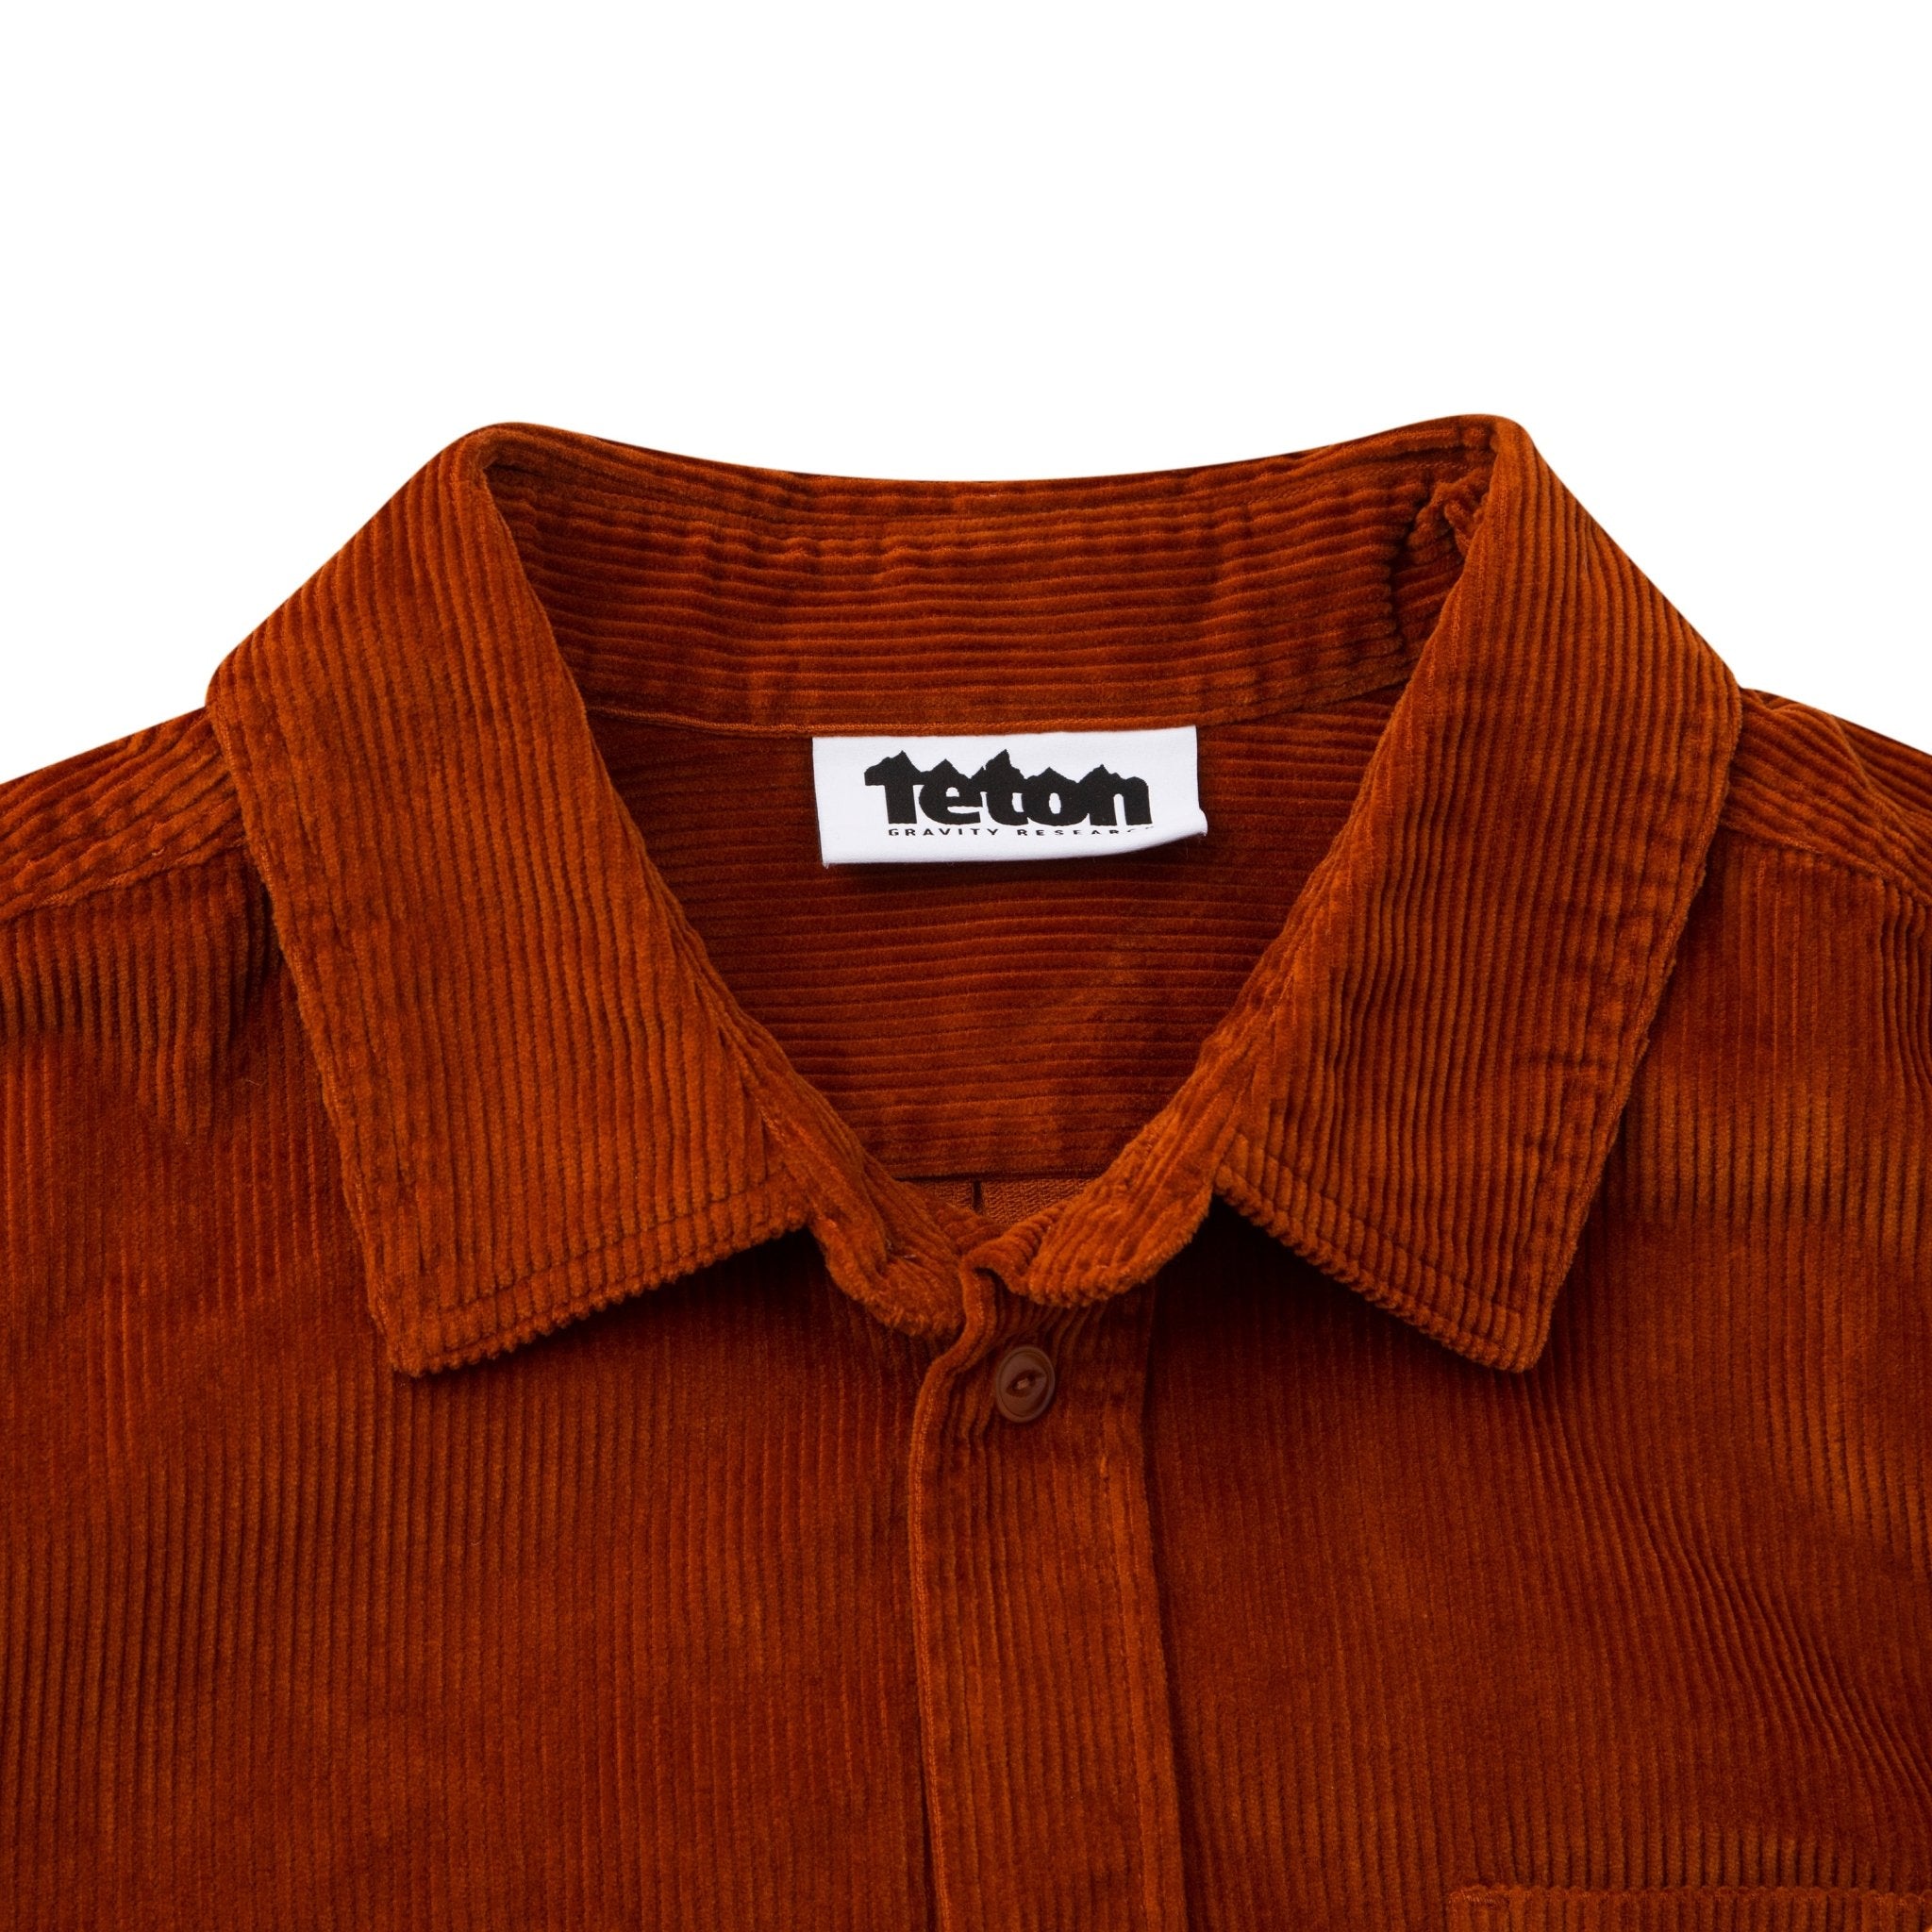 Men's Corduroy Work Shirt - Teton Gravity Research #color_terra